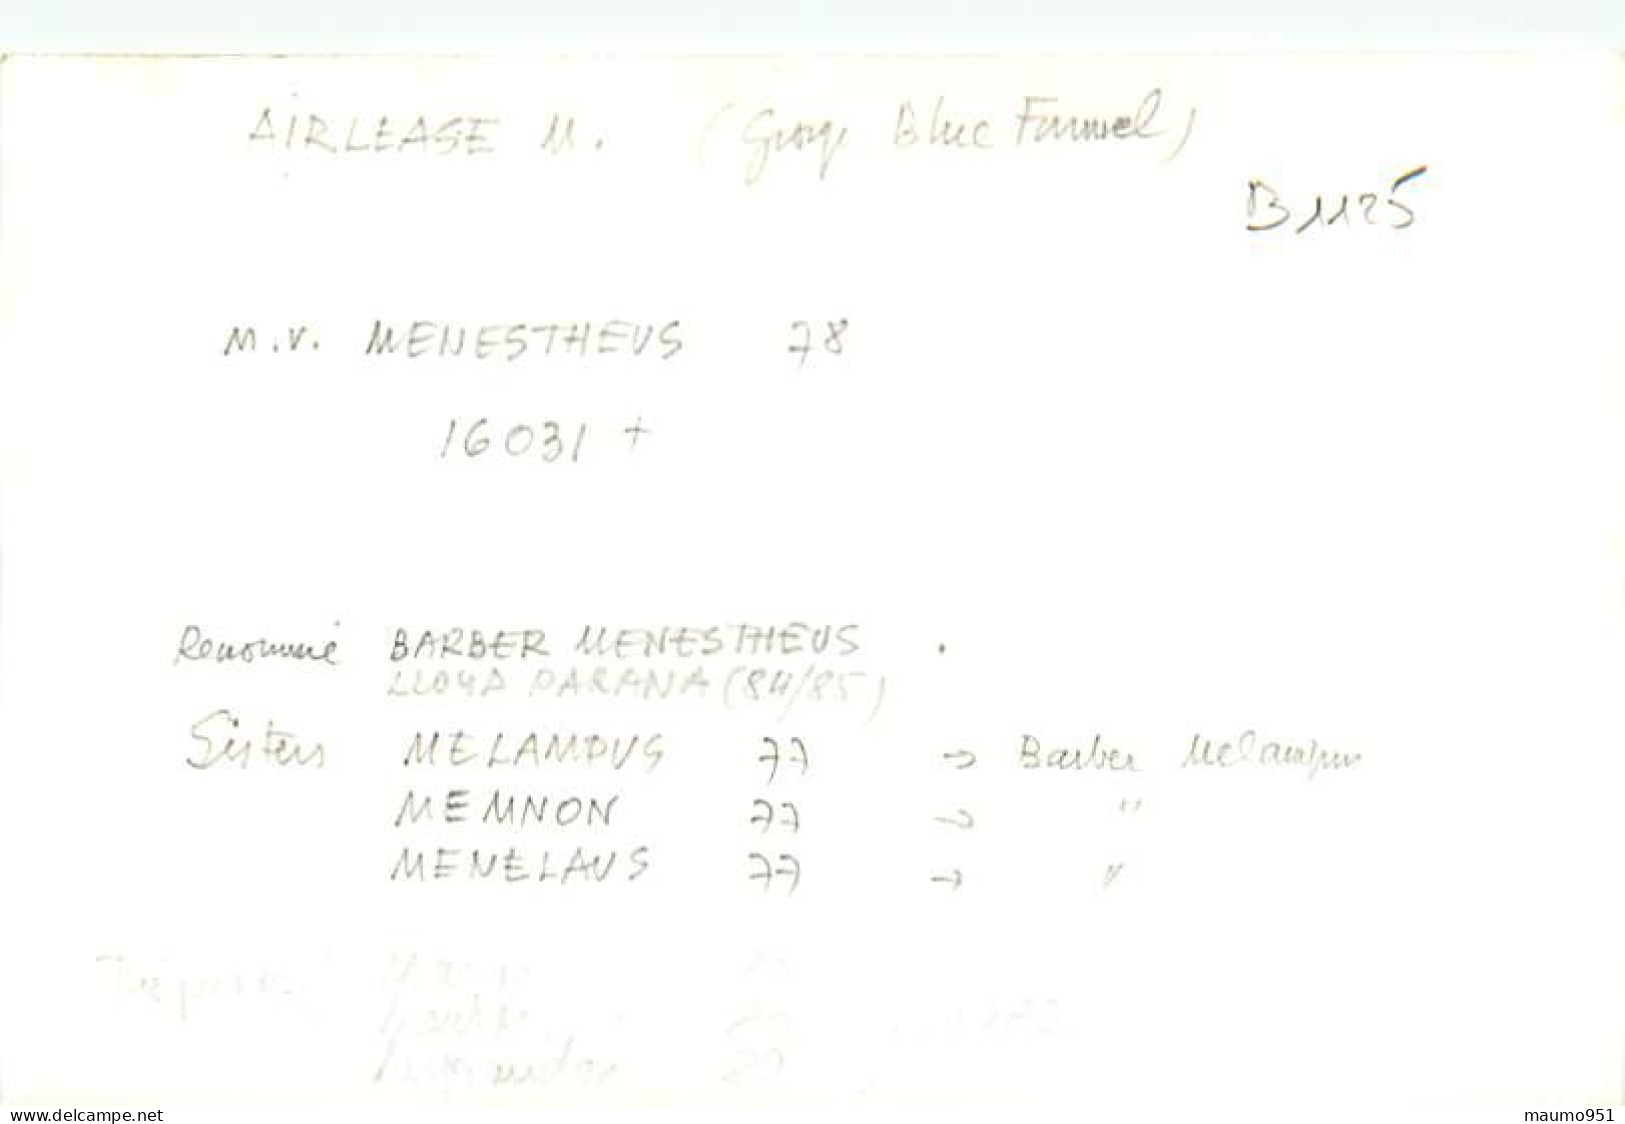 1125 CLICHE BATEAU PREFIXE M.V. - LE MENESTHEUS DE 1978 - CATEGORIE 16031 TONNES - FORMAT CPA N° B 1125 - Barcos